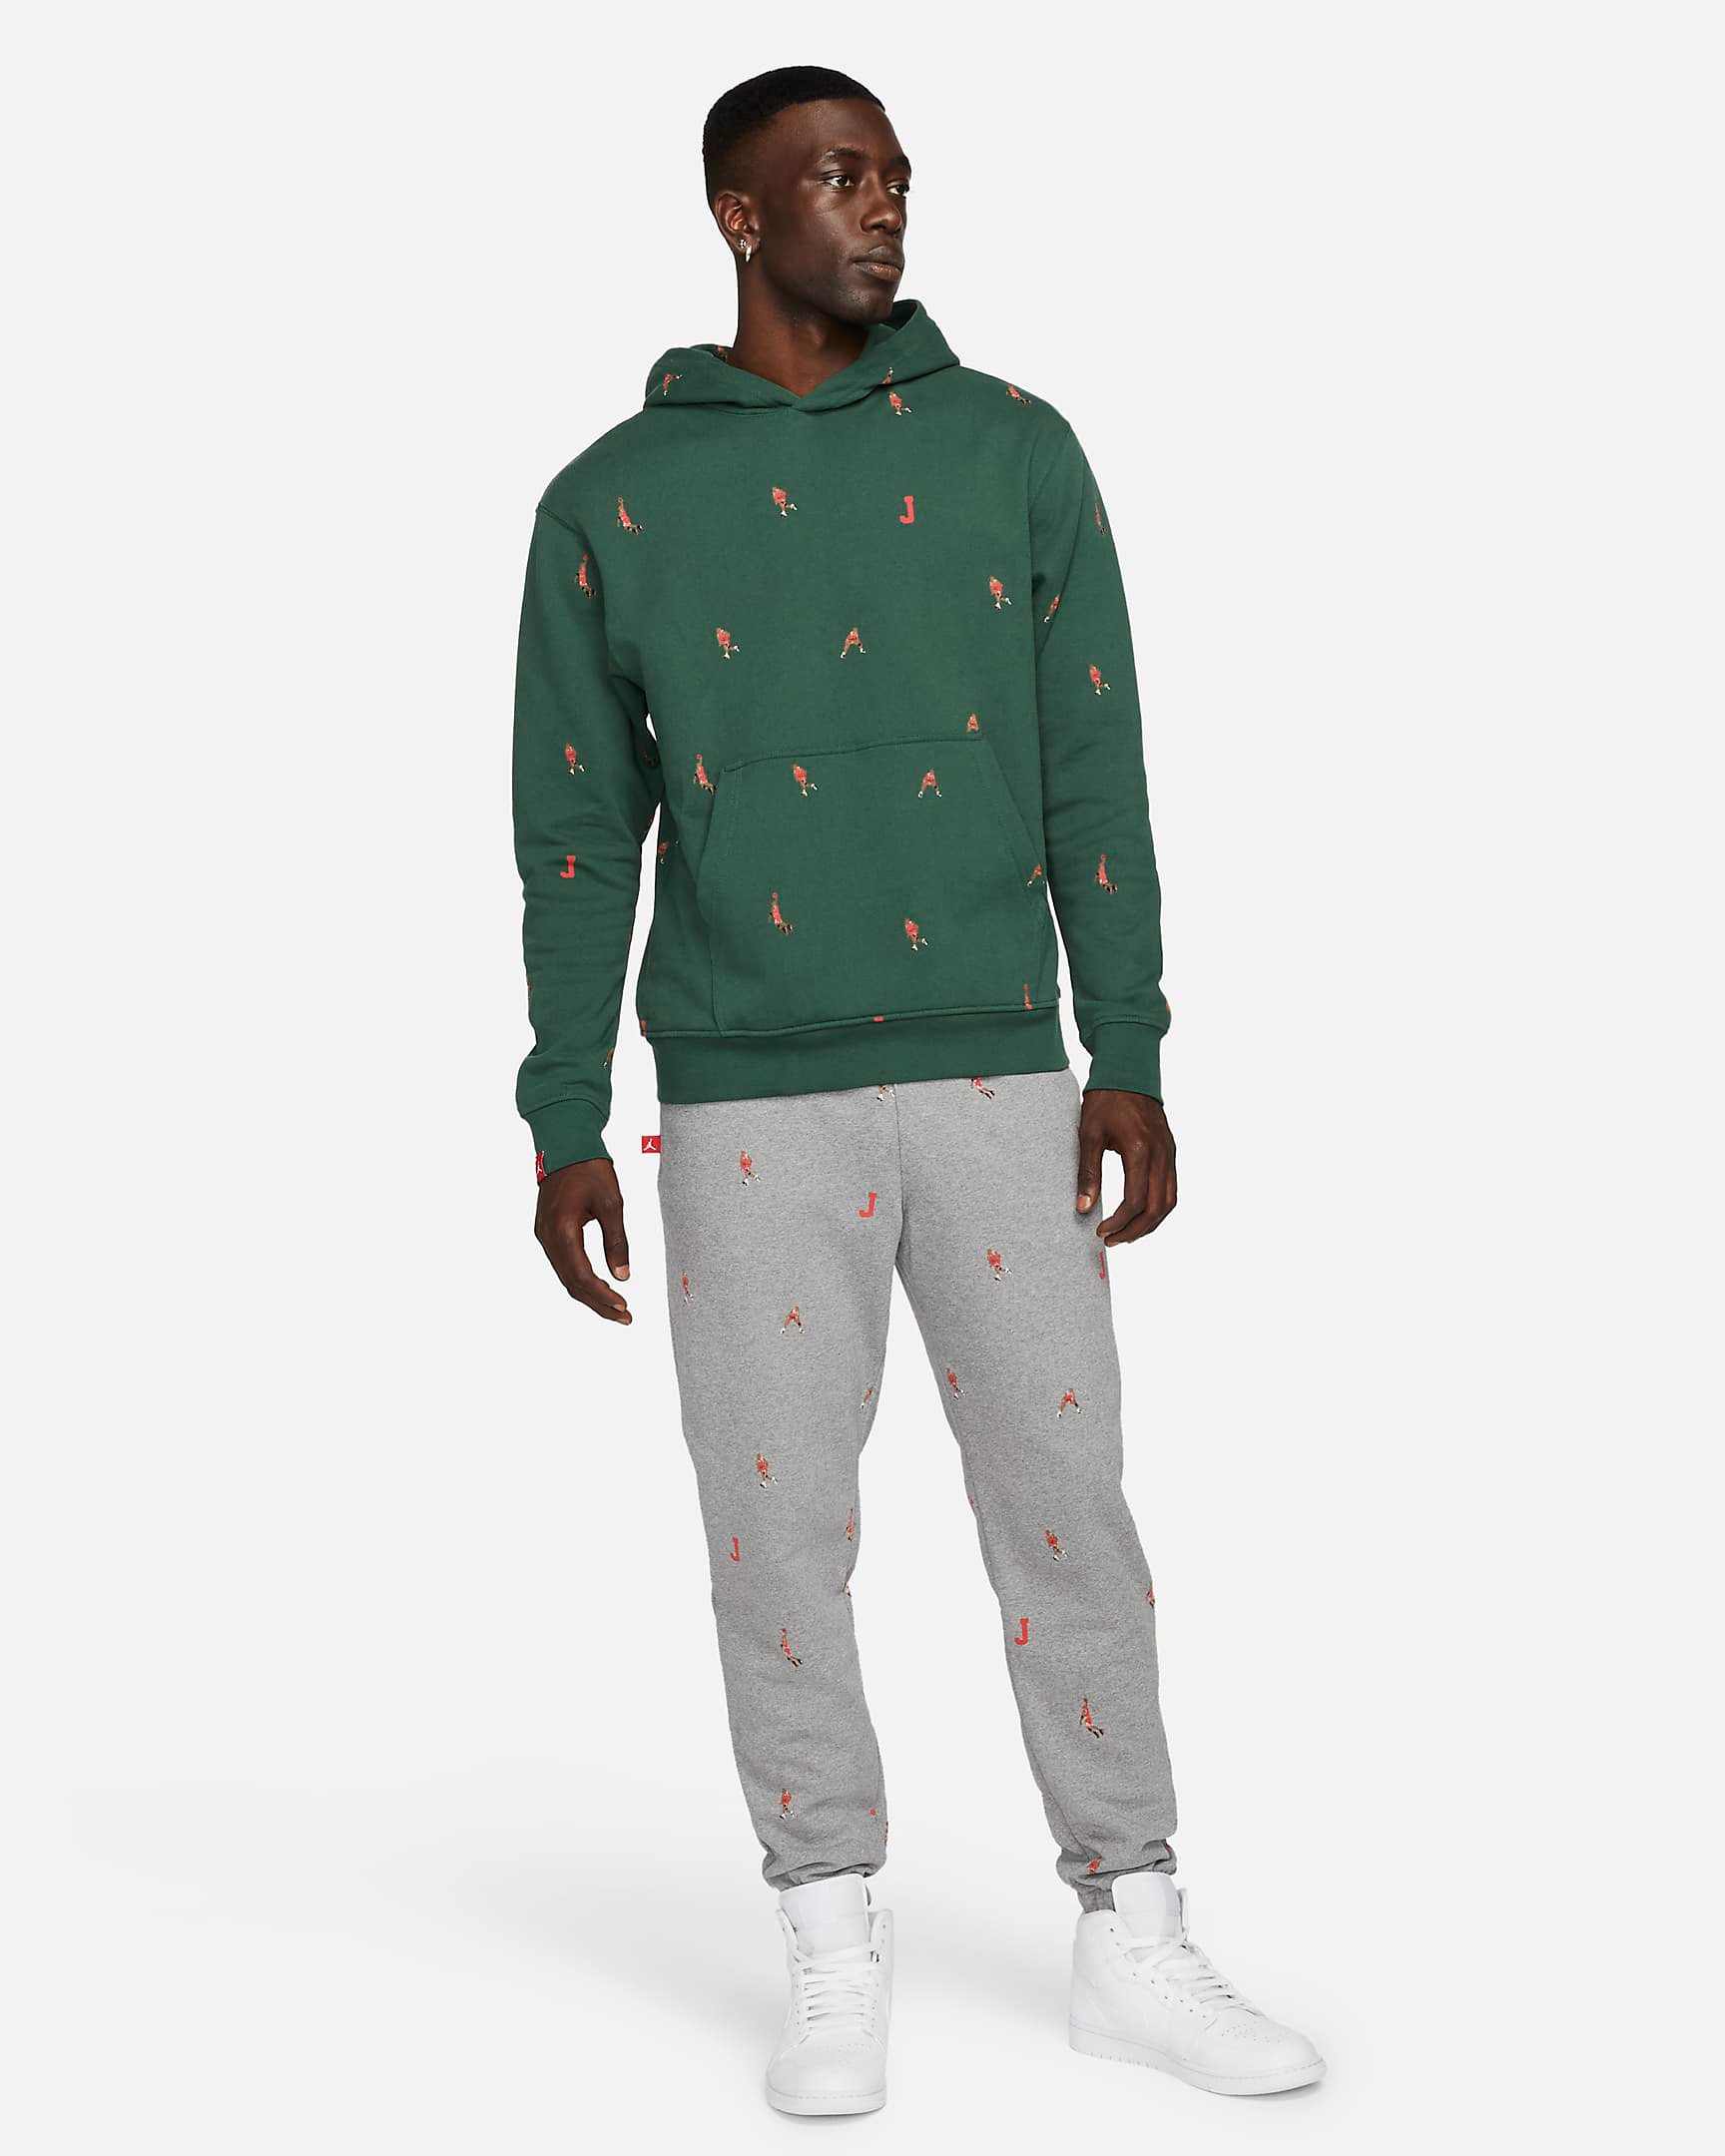 jordan-noble-green-essentials-printed-hoodie-pants-outfit